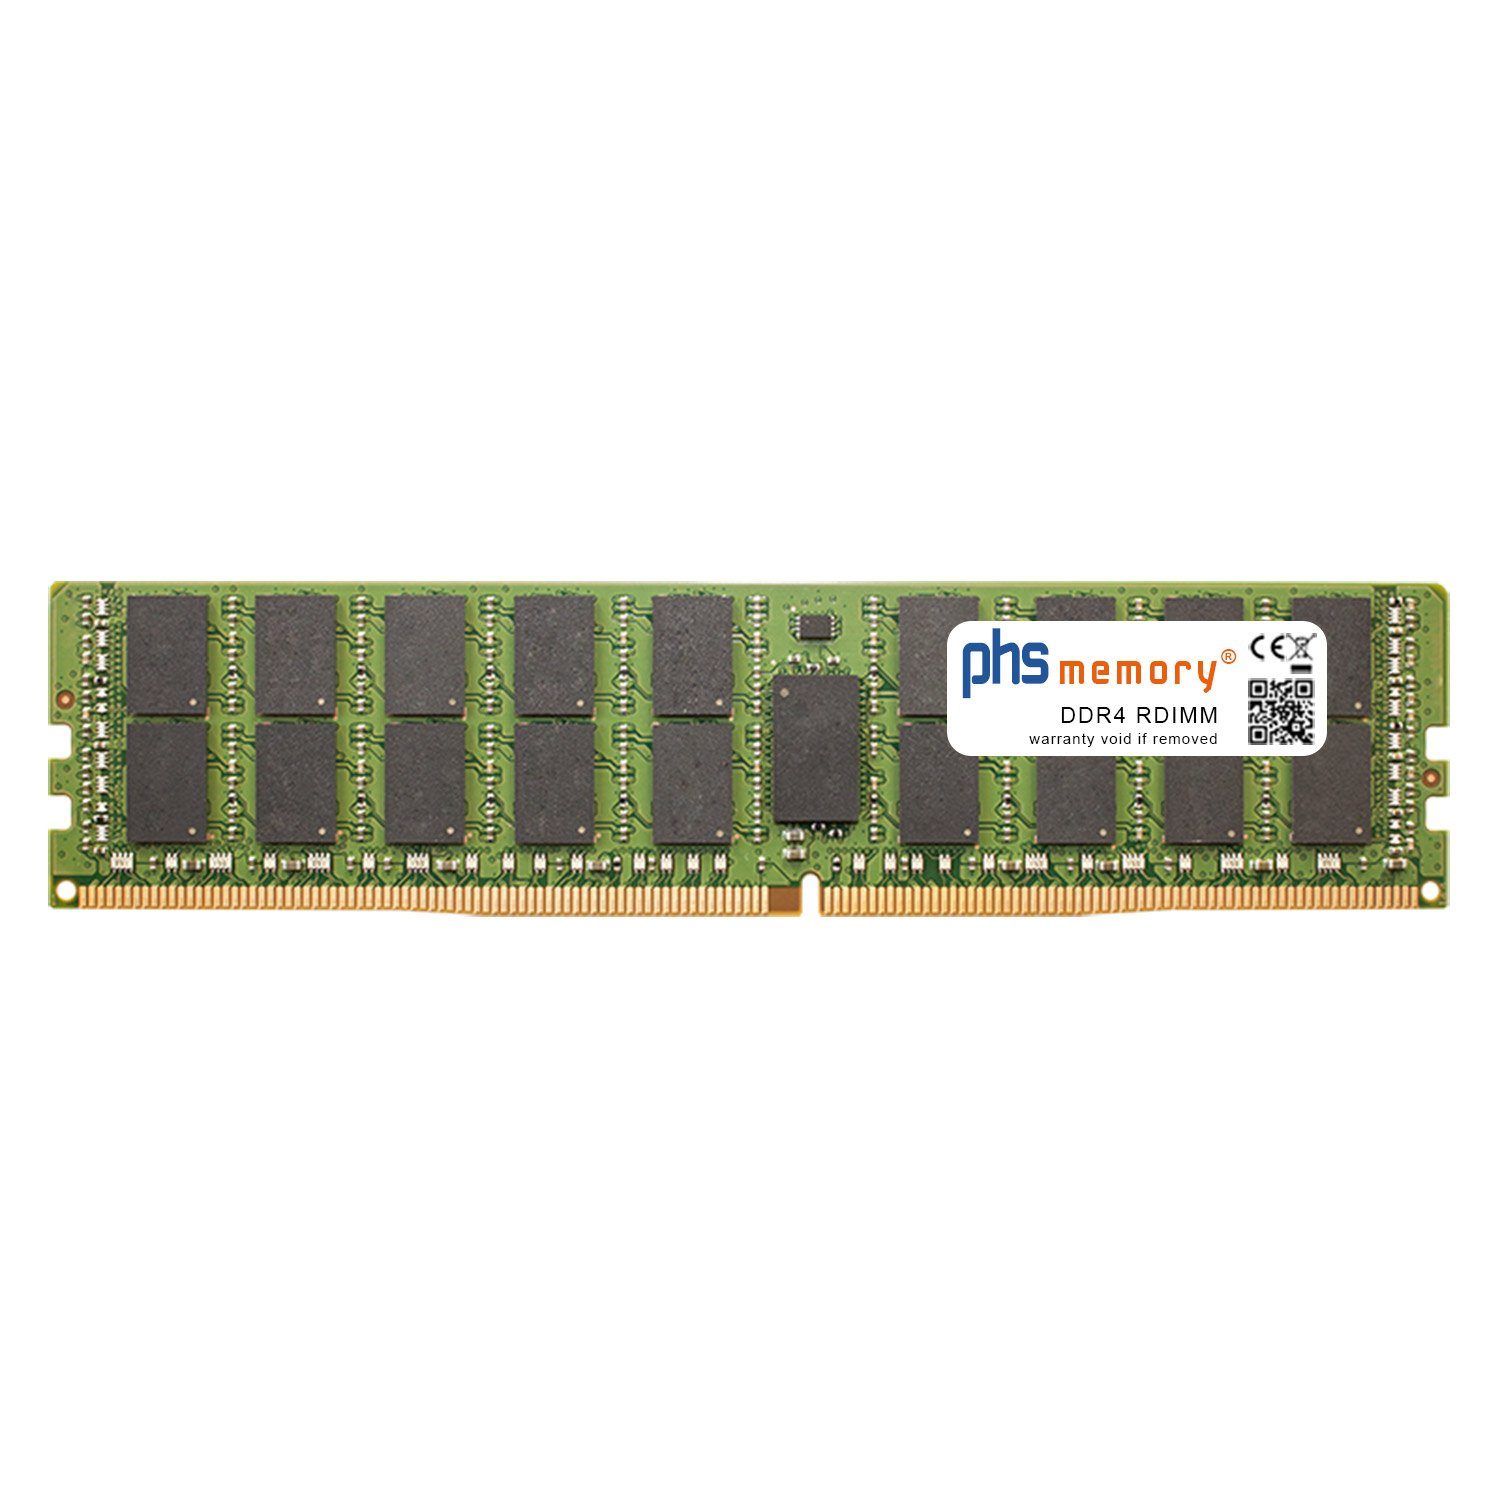 PHS-memory RAM für Supermicro SuperServer 2028TP-DC0TR Arbeitsspeicher